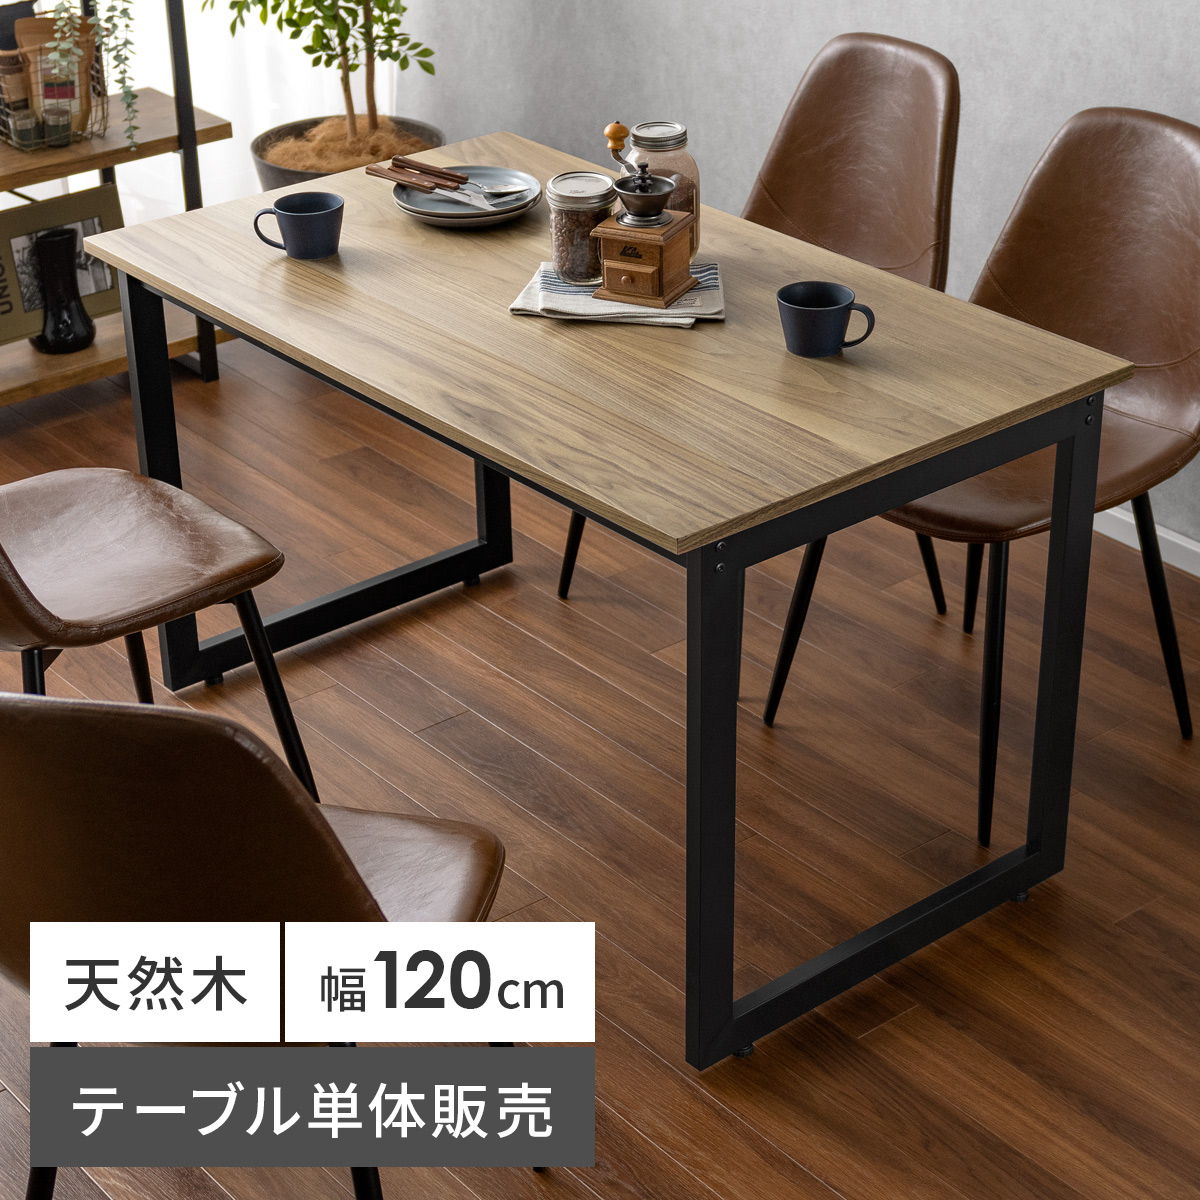 ダイニングテーブル Velde(ヴェルデ) 120cm幅タイプ 【公式】 エア・リゾーム インテリア・家具通販